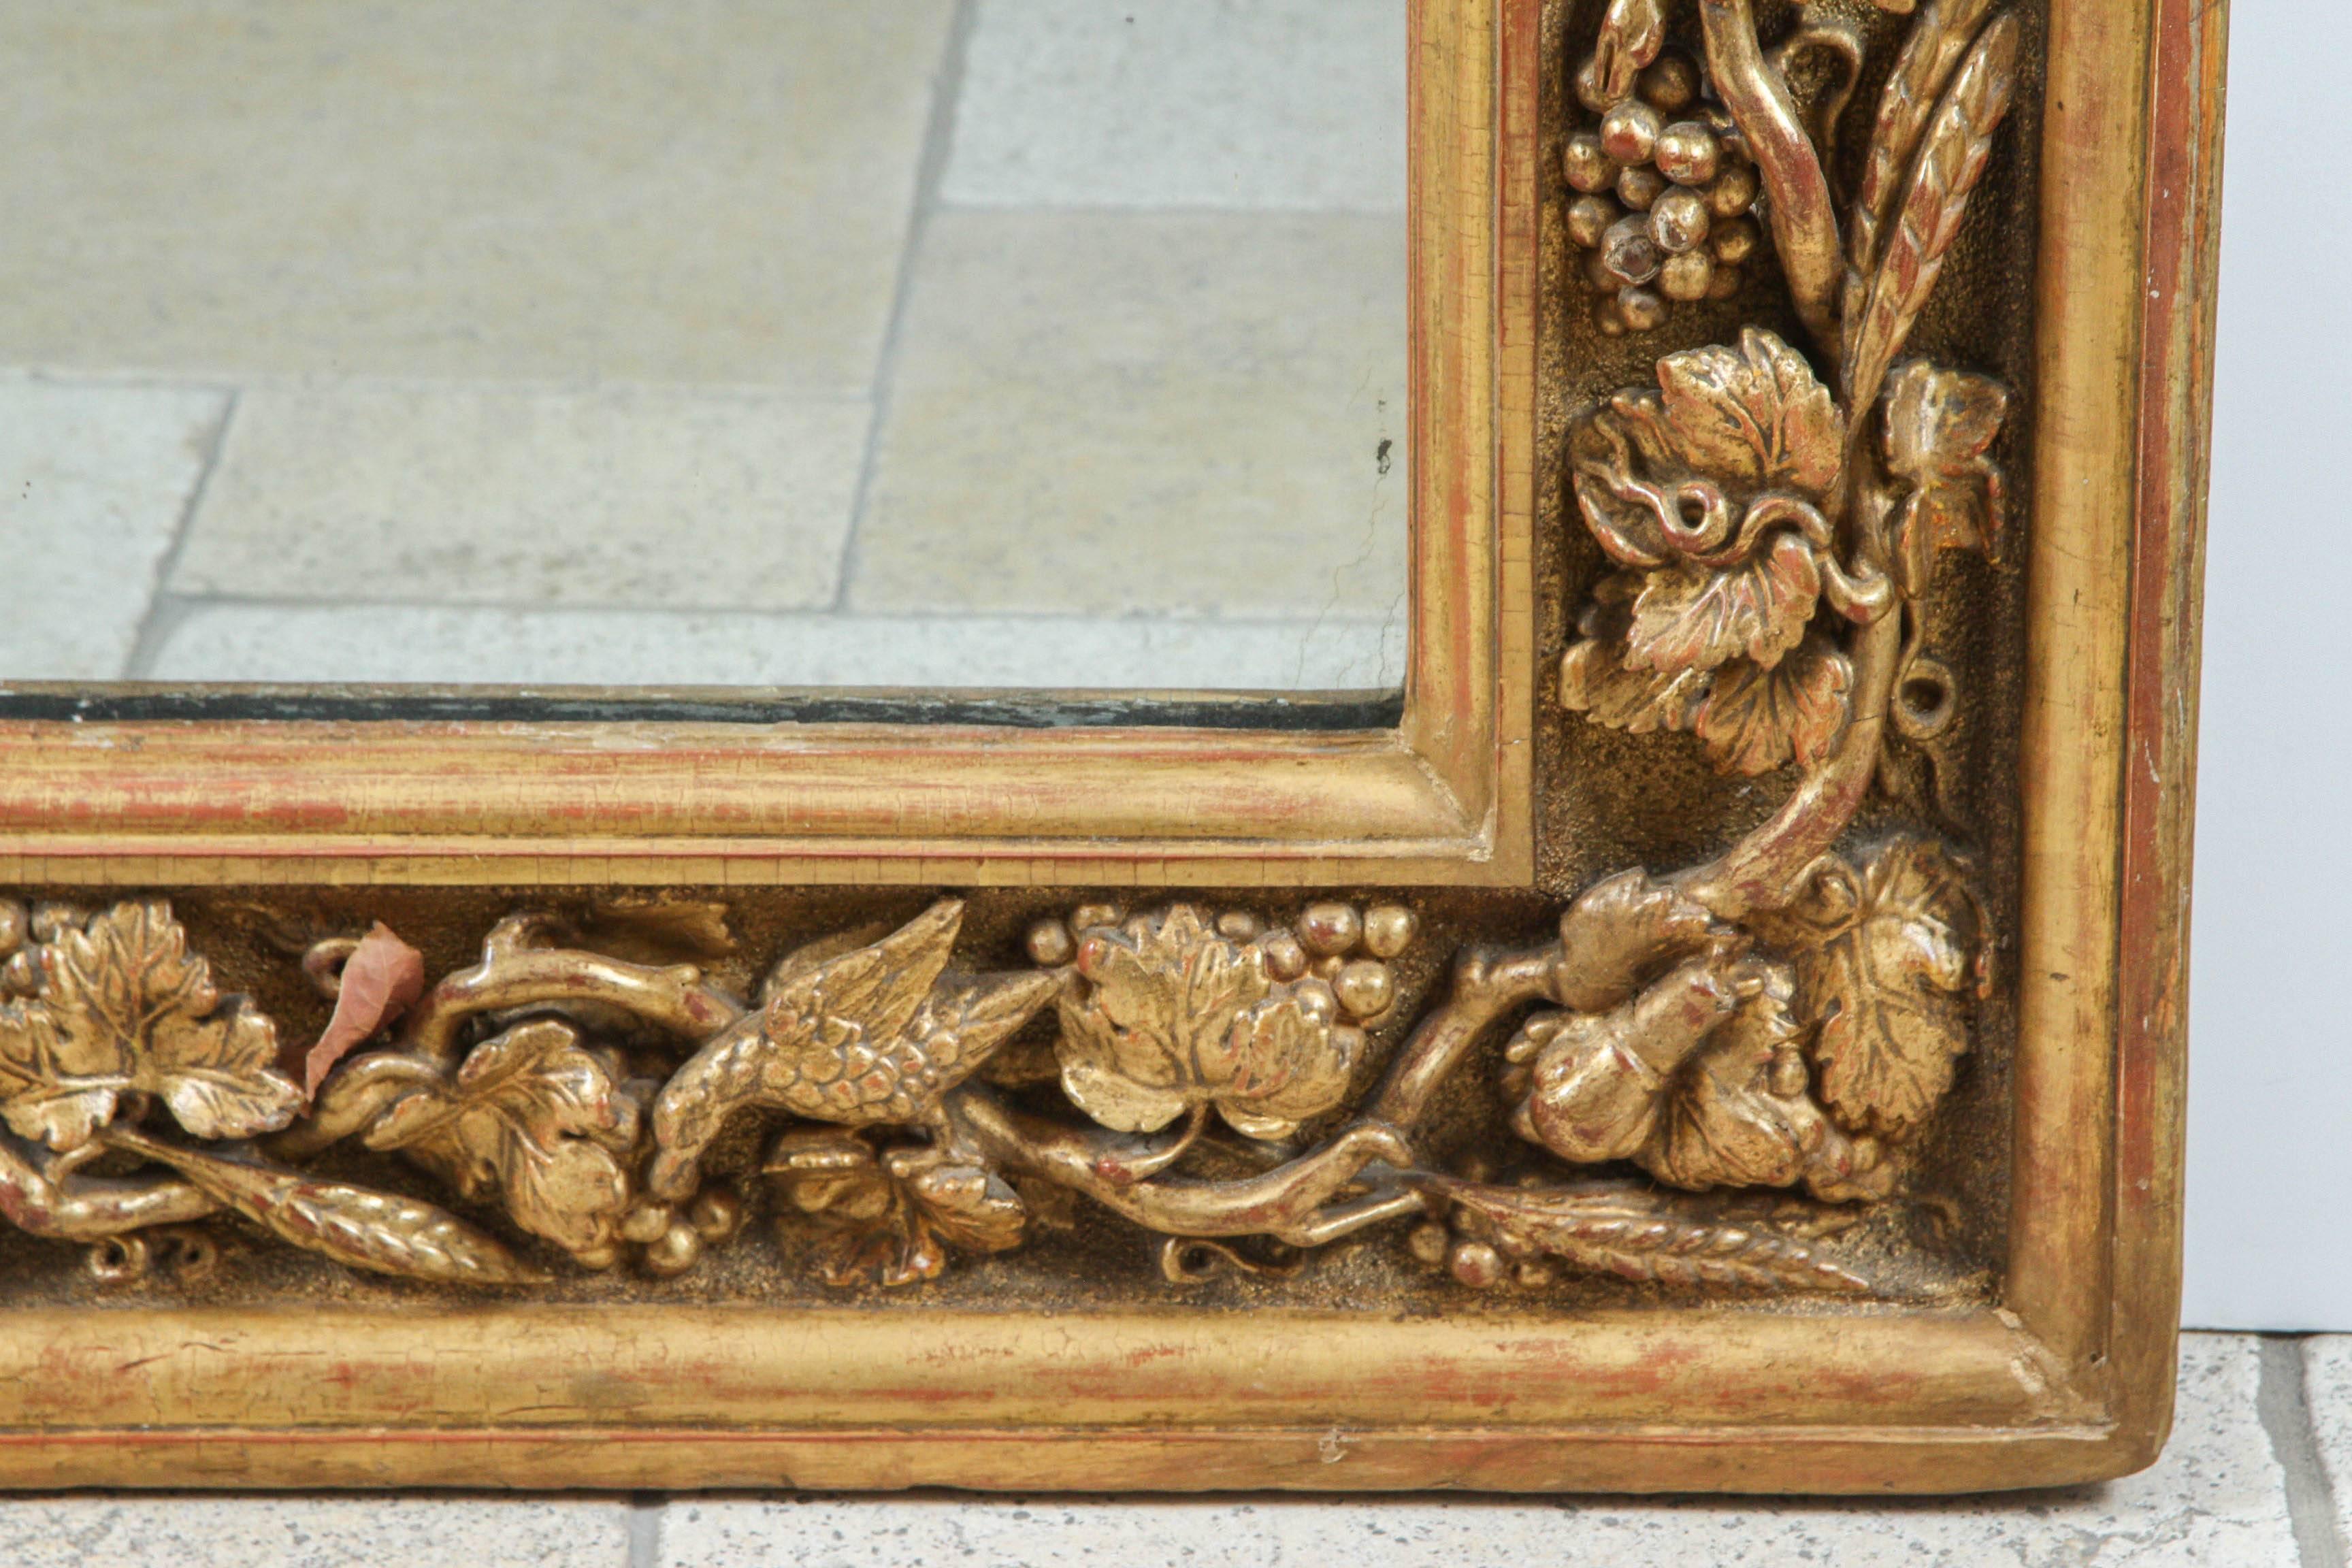 englischer geschnitzter Vergoldungsspiegel aus dem 18. Jahrhundert mit Lebensbaummotiv, das Schlangen, Schnecken und Vögel zeigt. Die Innenmaße des Spiegels sind: 42 Zoll breit x 61 Zoll hoch. In das Vergoldungsholz ist eine Herstellermarke